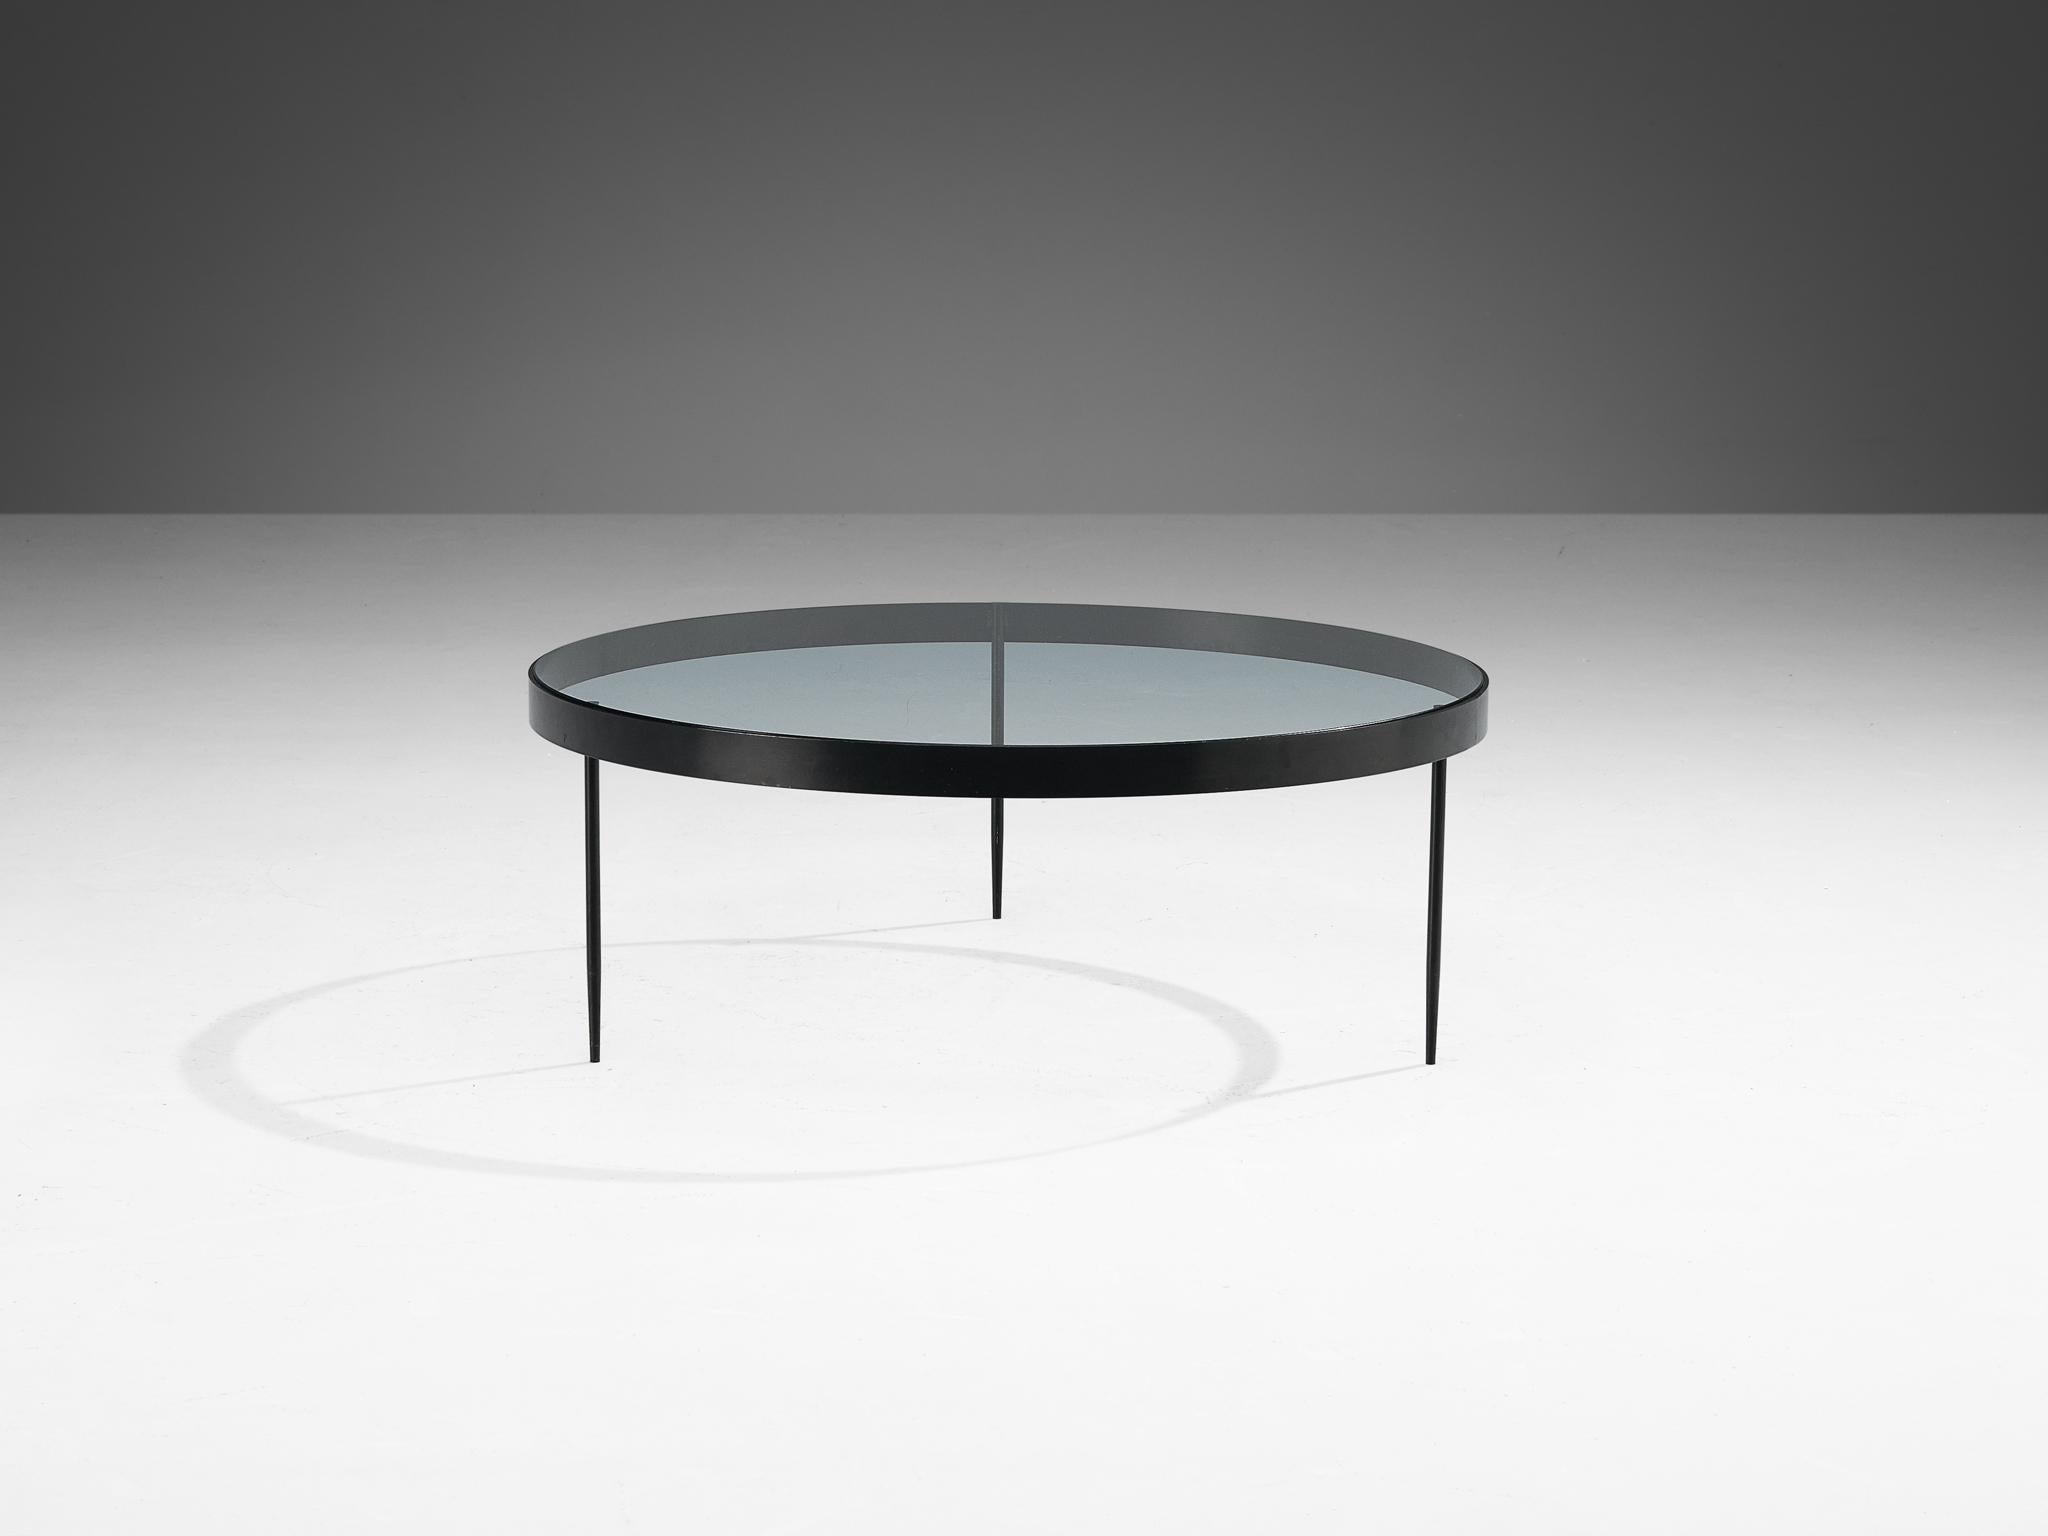 Janni Van Pelt, table basse, verre et métal noir, Pays-Bas, design 1958

Table basse ronde en métal laqué noir et verre. Cette table est une variante du modèle G4 de Janni Van Pelts. La base se compose de quatre pieds avec une connexion